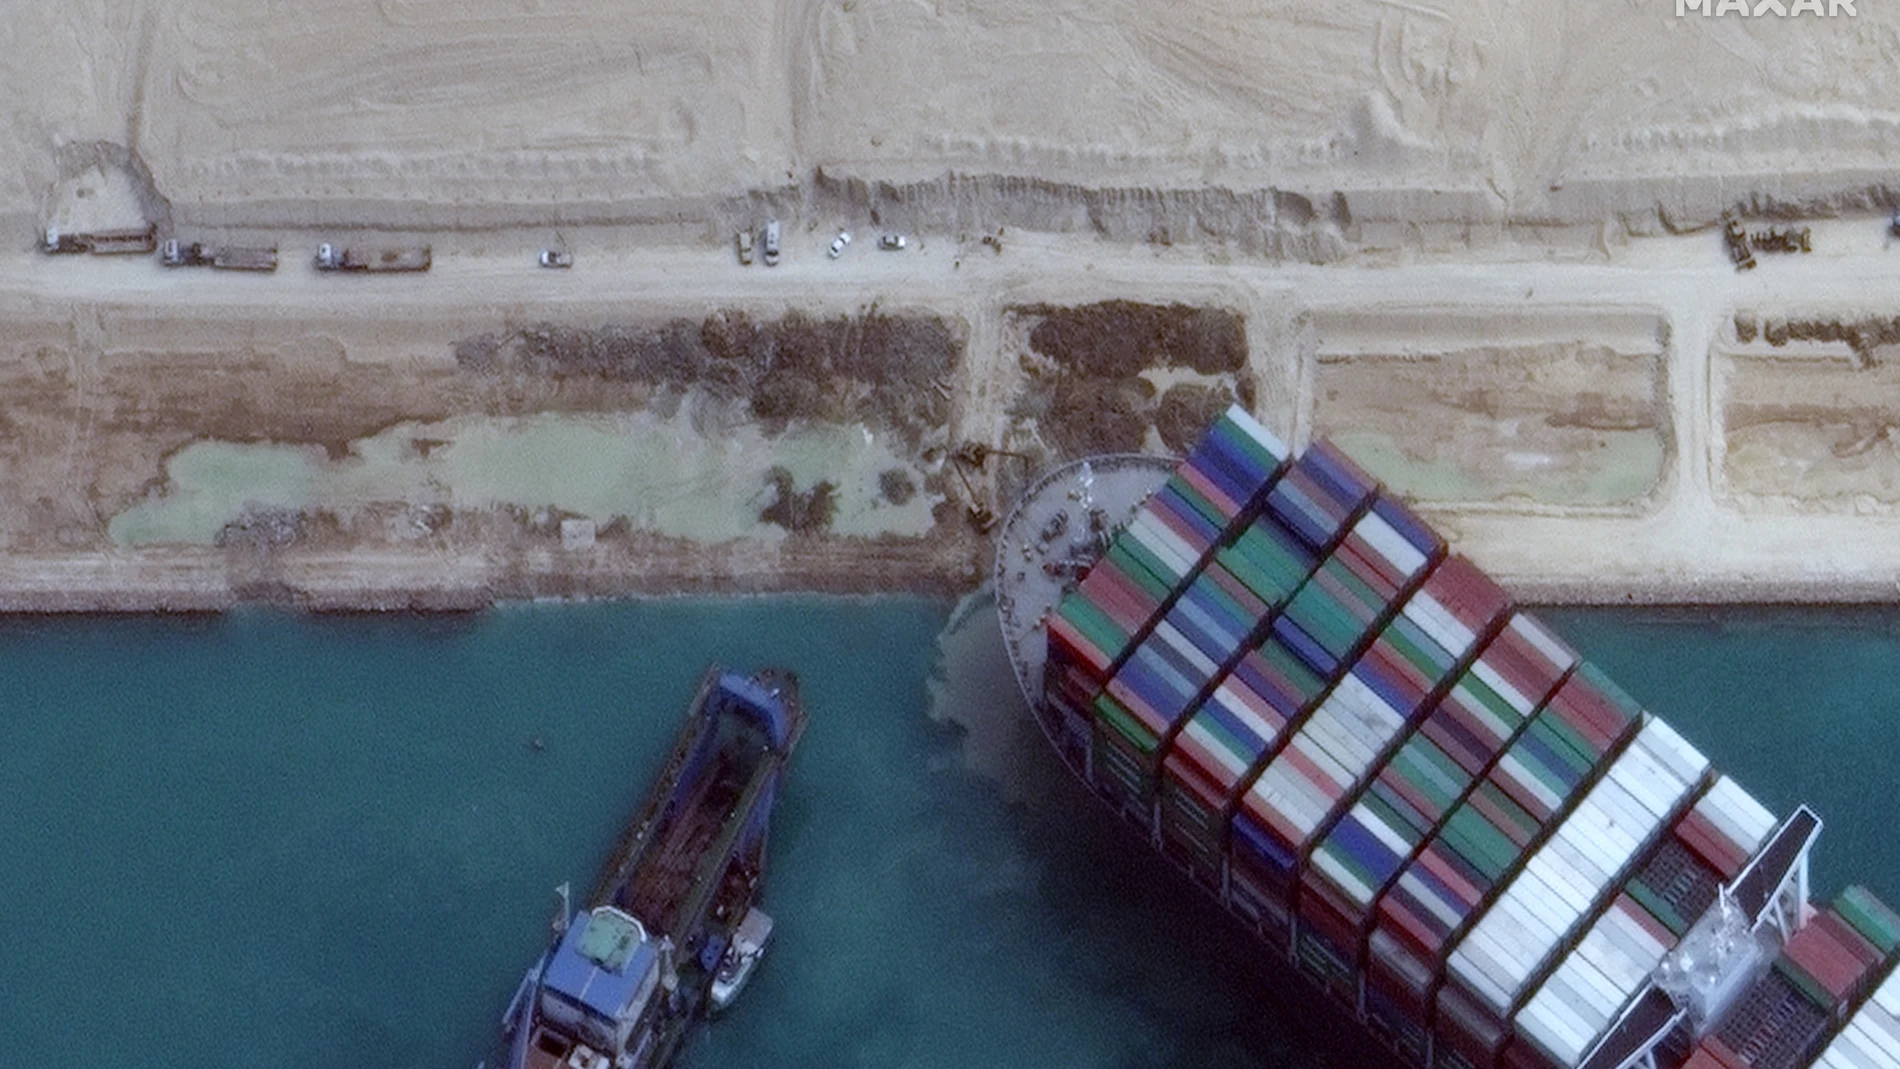 Imagen satelital del carguero "Ever Given" atrapado en el Canal de Suez